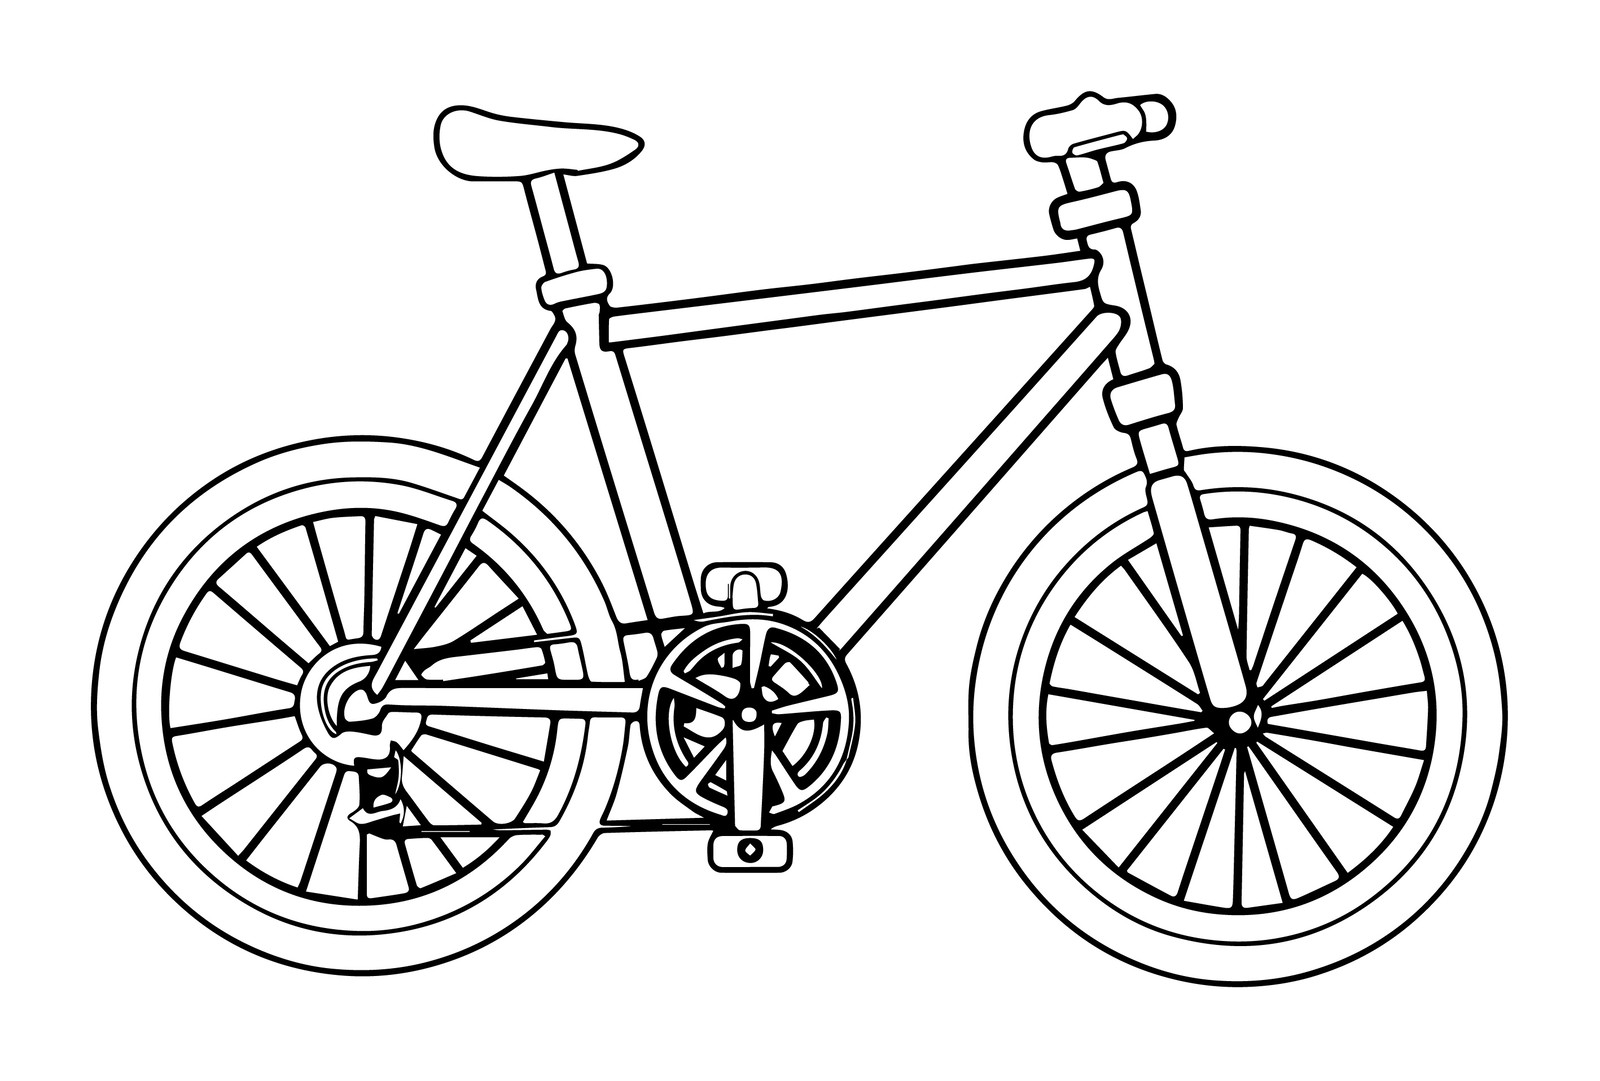 Распечатать на А4 и скачать все раскраски из категории «Велосипеды»